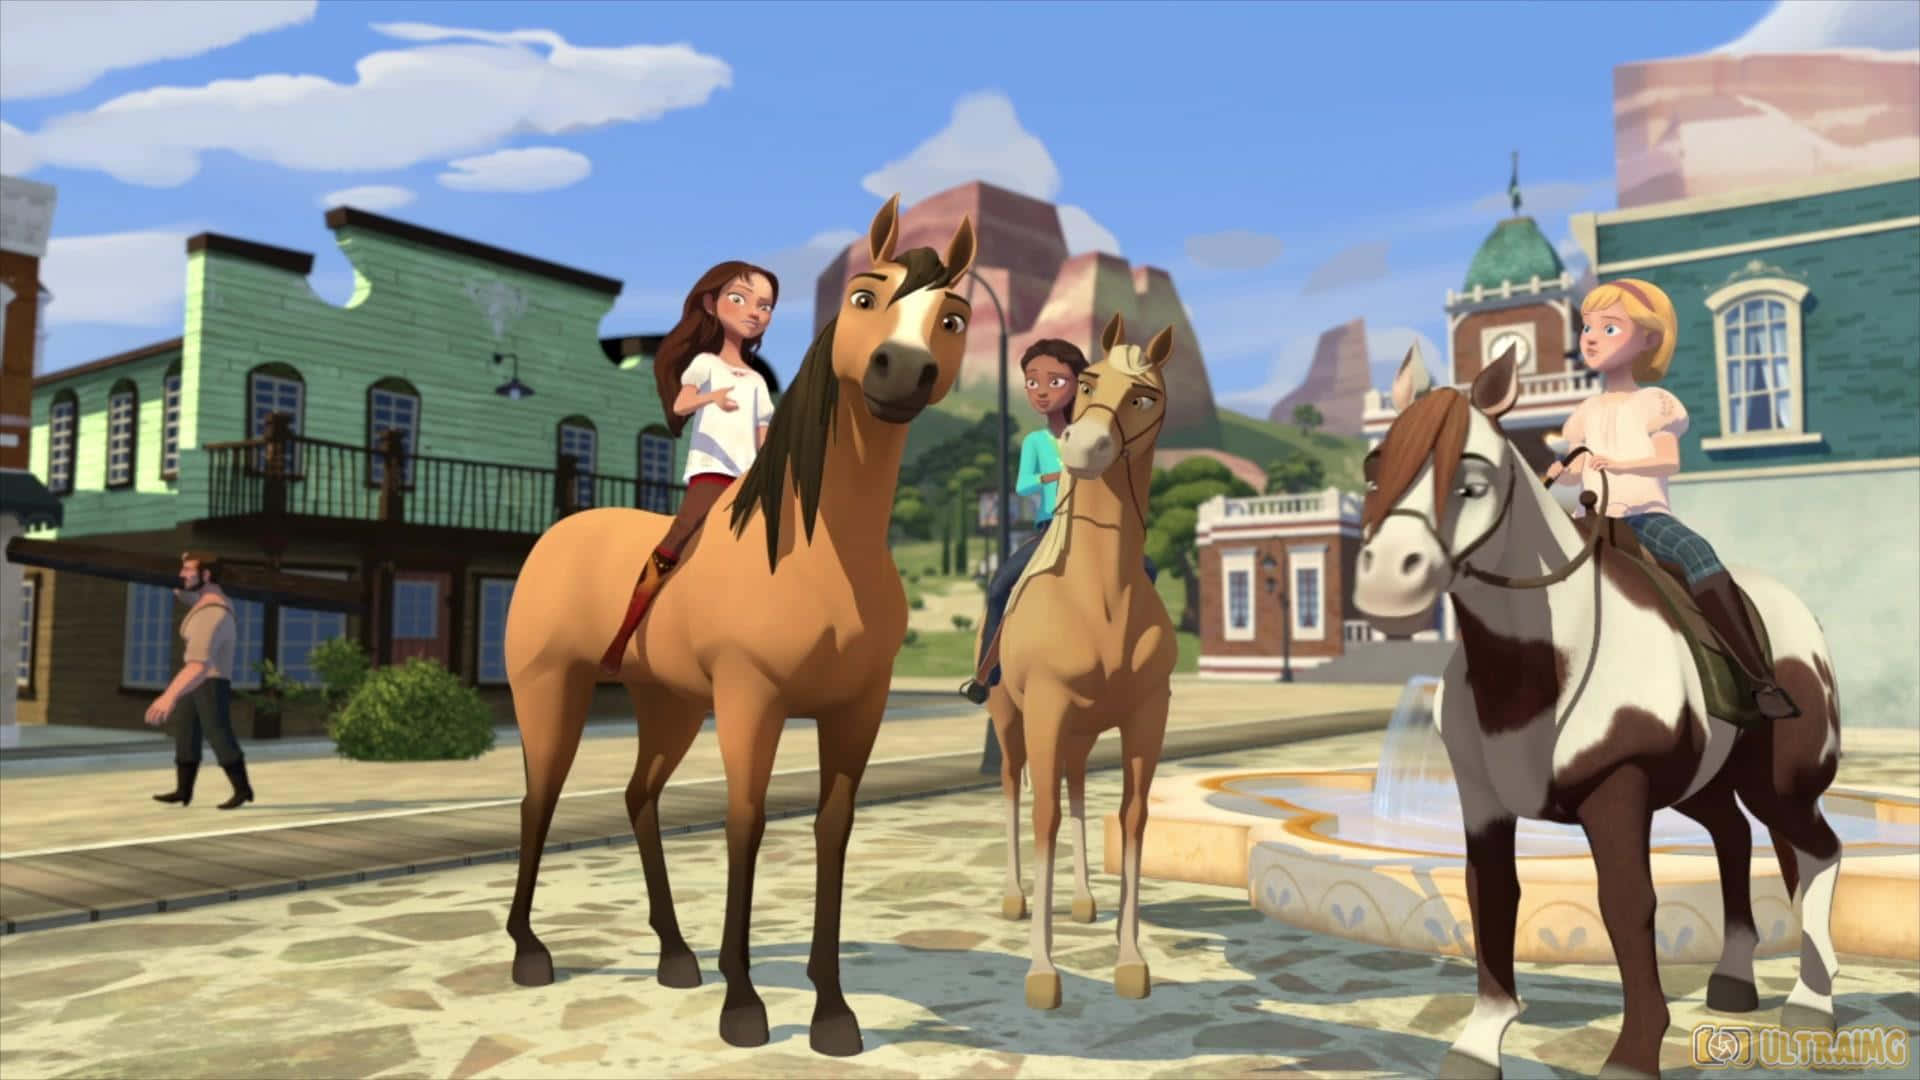 Einegruppe Von Menschen Auf Pferden In Einem Cartoon Wallpaper